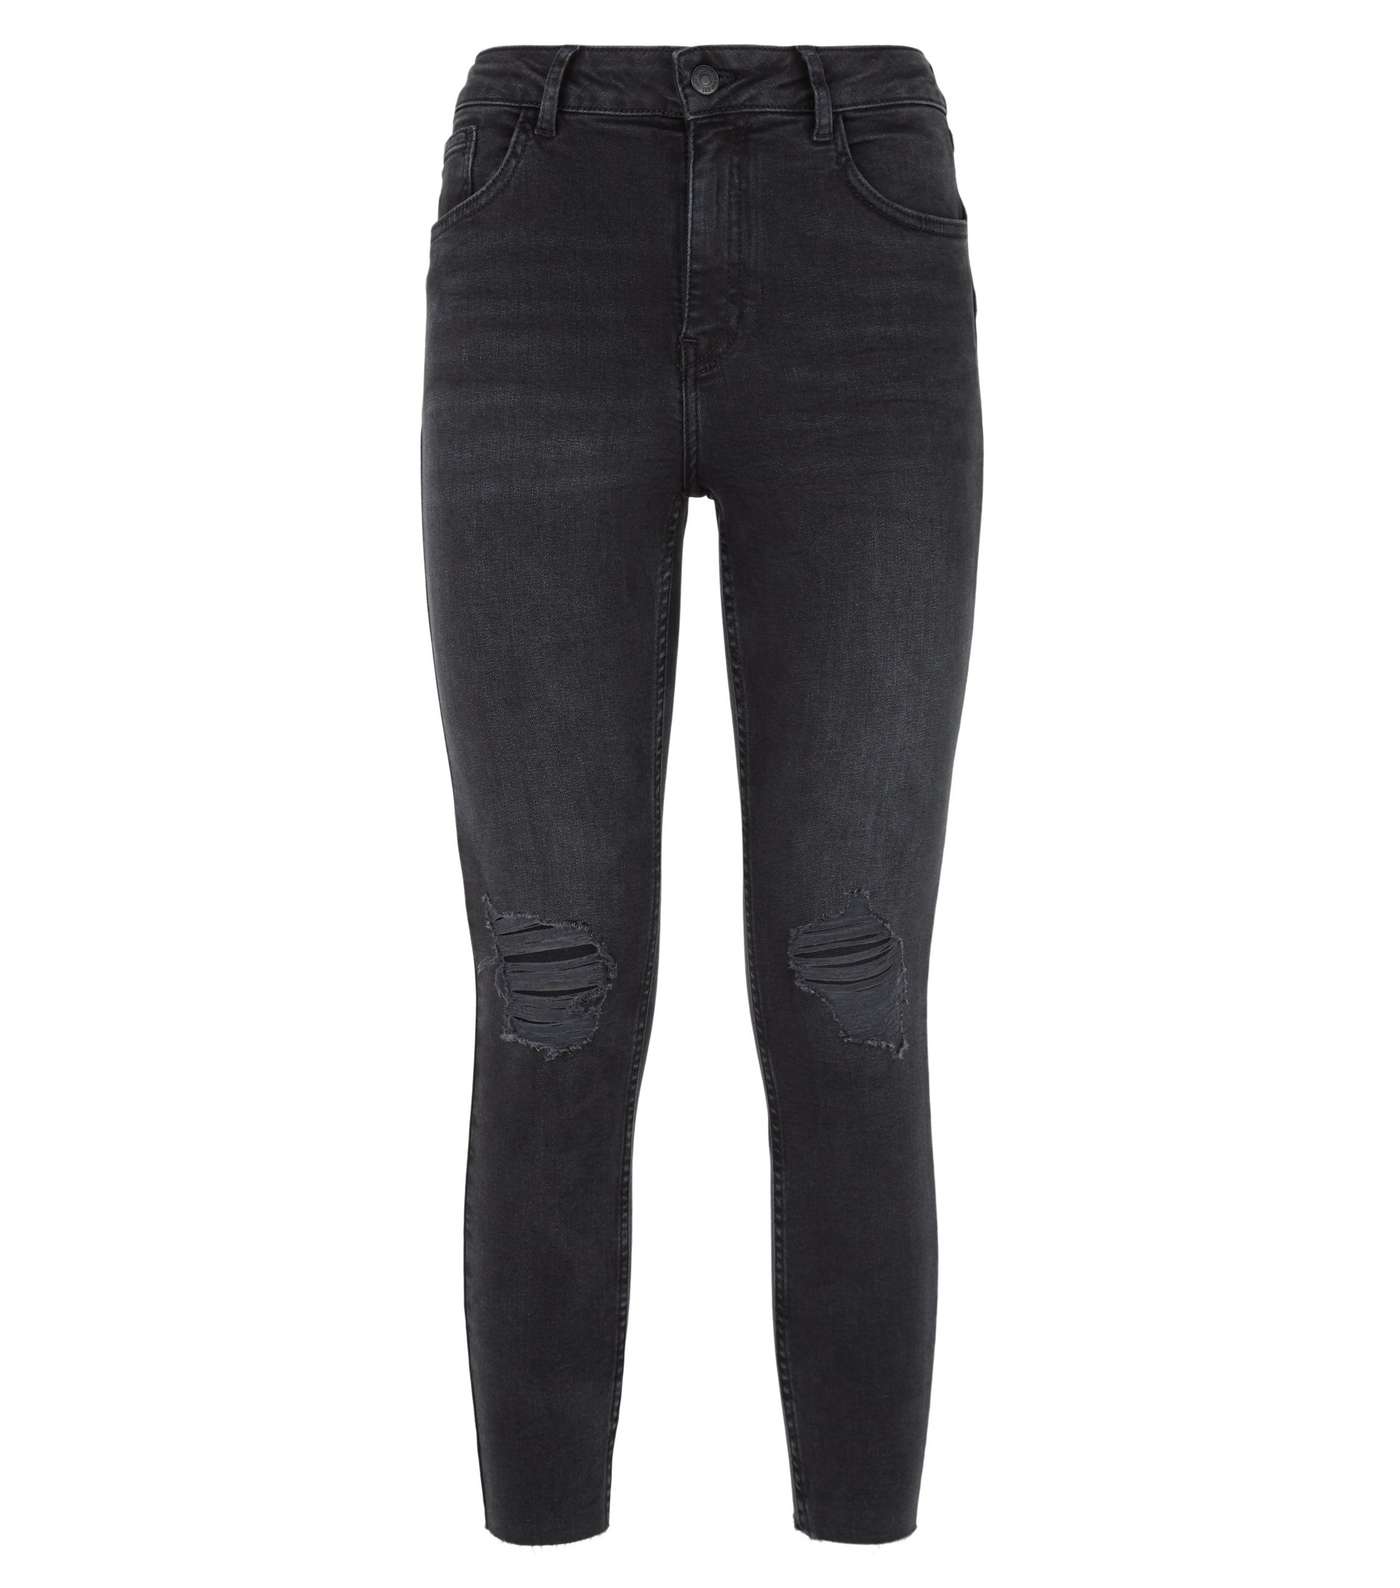 Petite Black High Rise 'Lift & Shape' Skinny Jeans Image 4